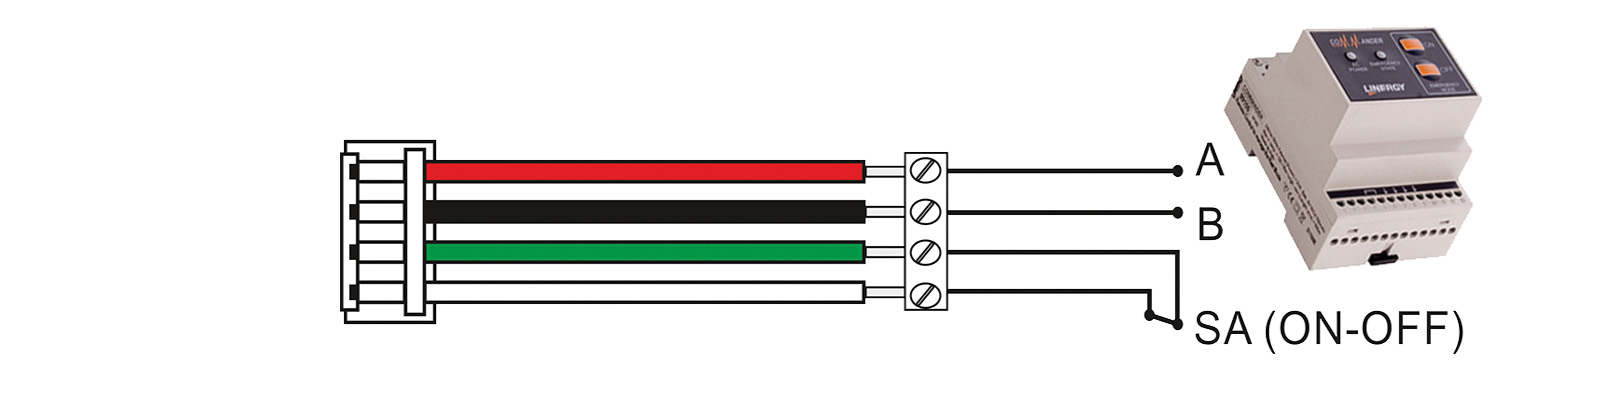 LA252 AANSLUITKIT (KABEL/CONNECTOR)  (Alleen voor gebruik voor STANDAARD modellen)